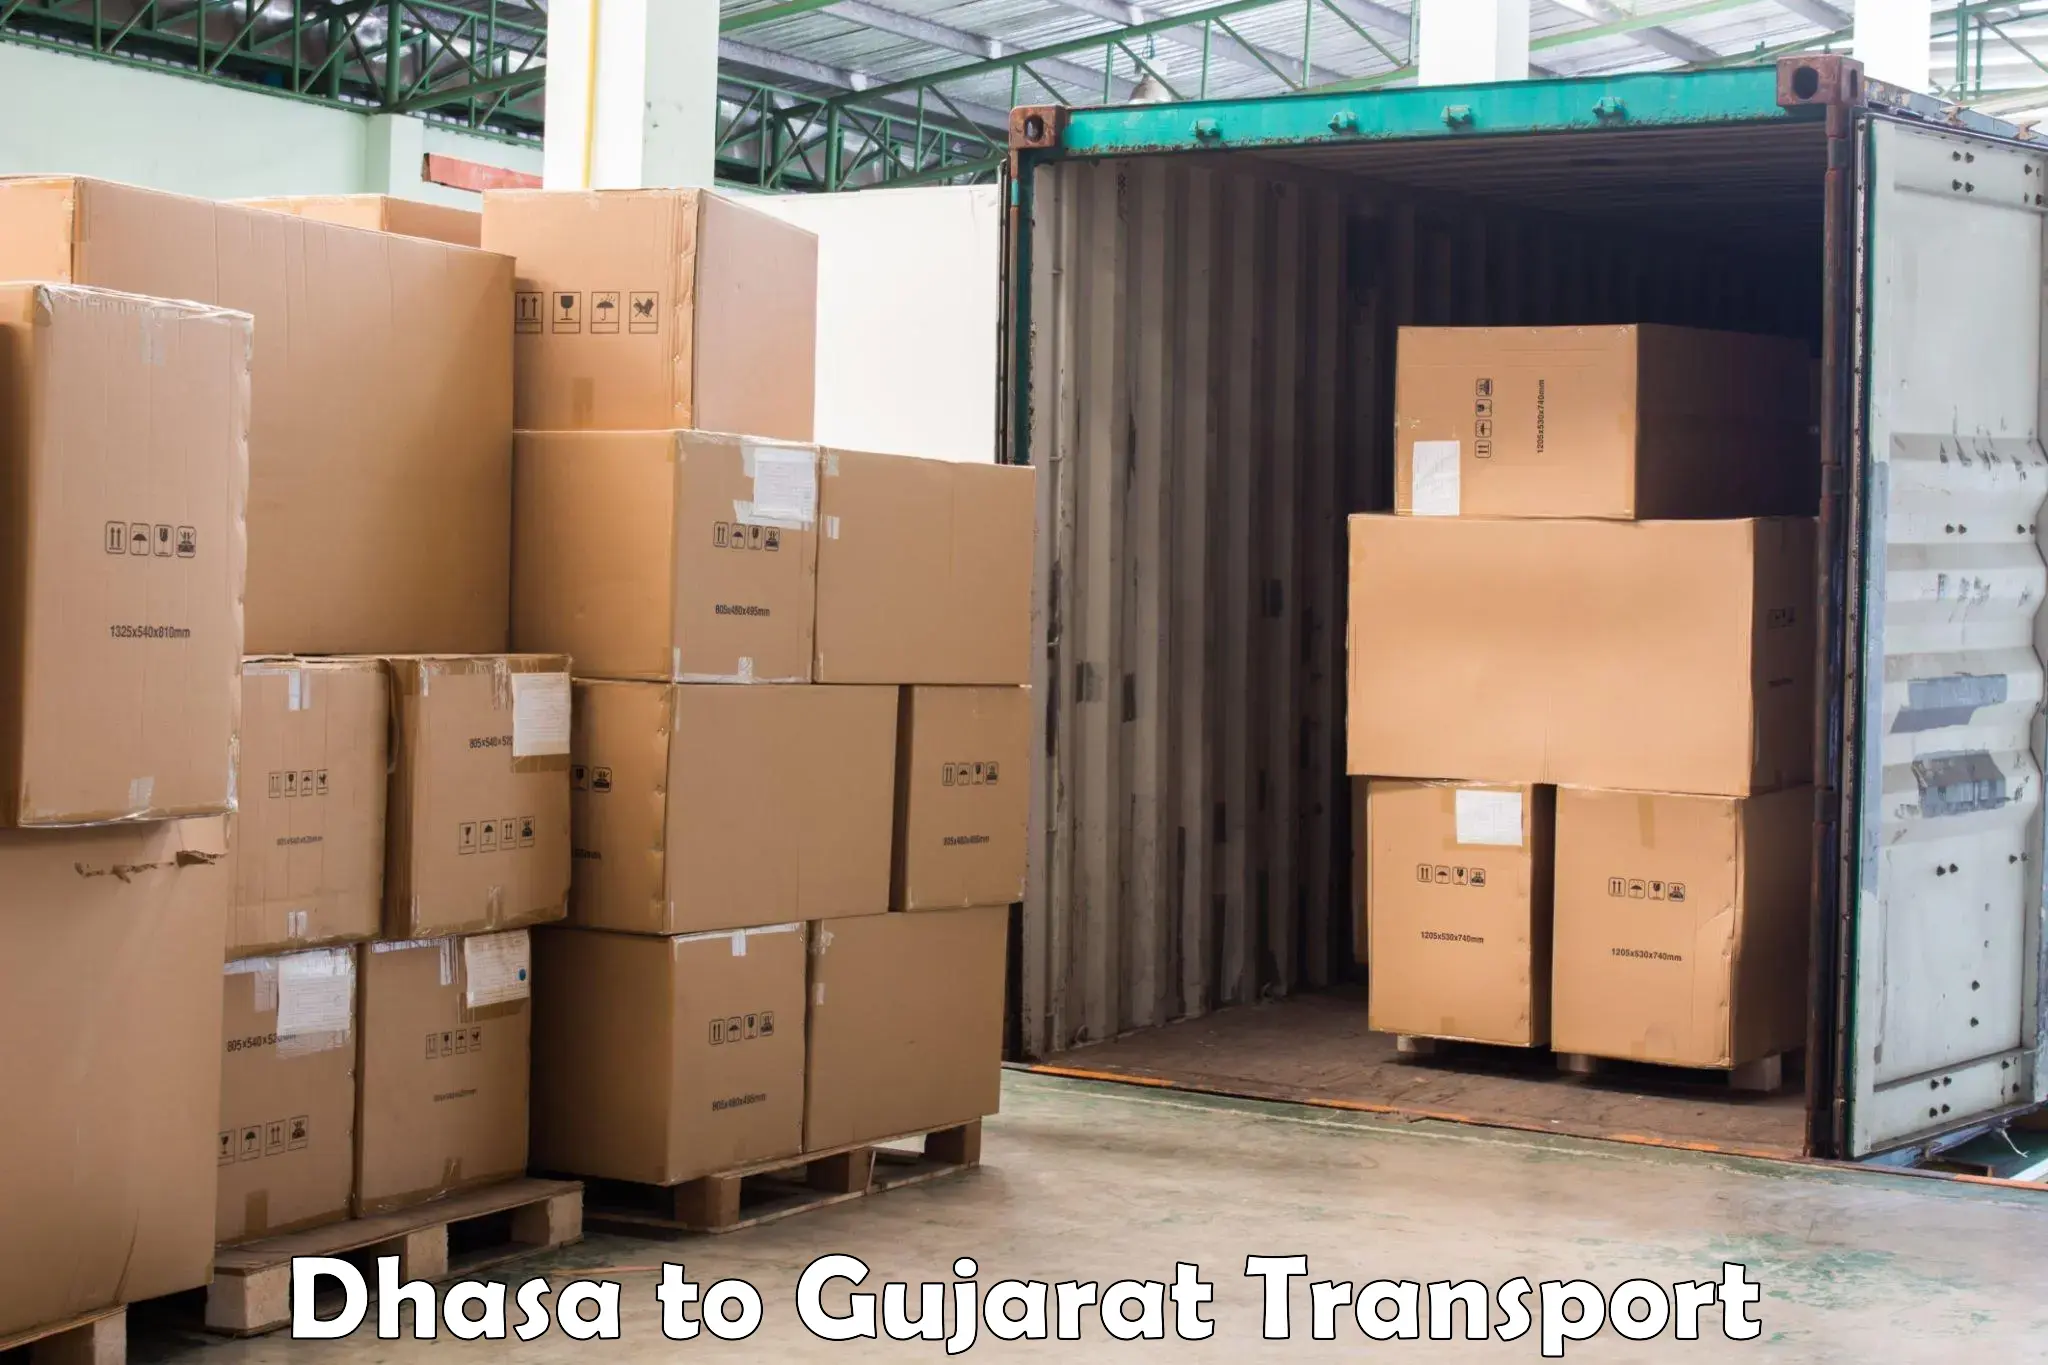 Furniture transport service Dhasa to Chotila